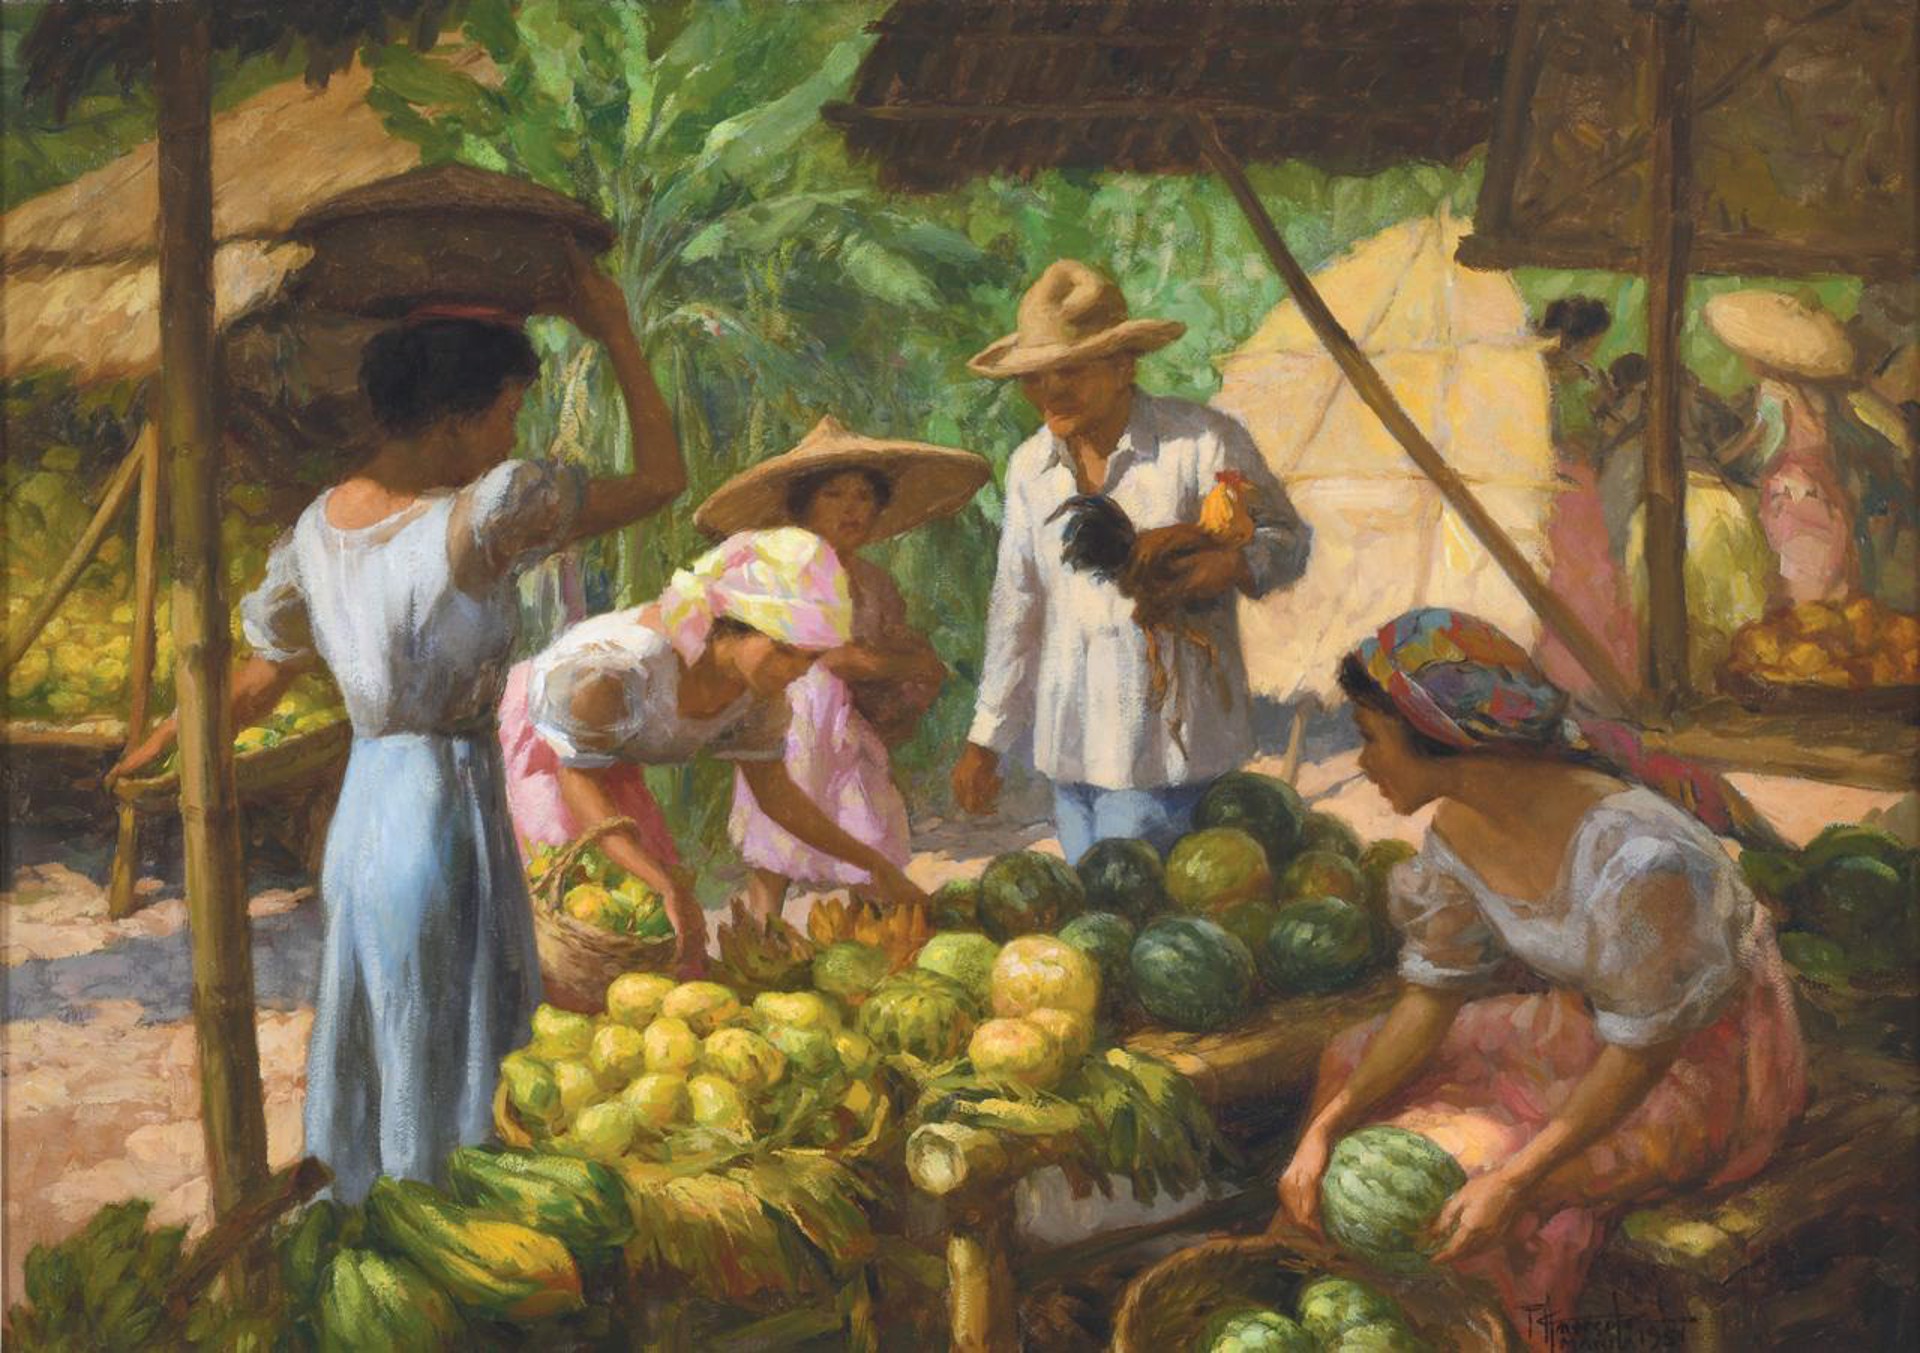 Fruit Seller in the Marketplace by Fernando Amorsolo